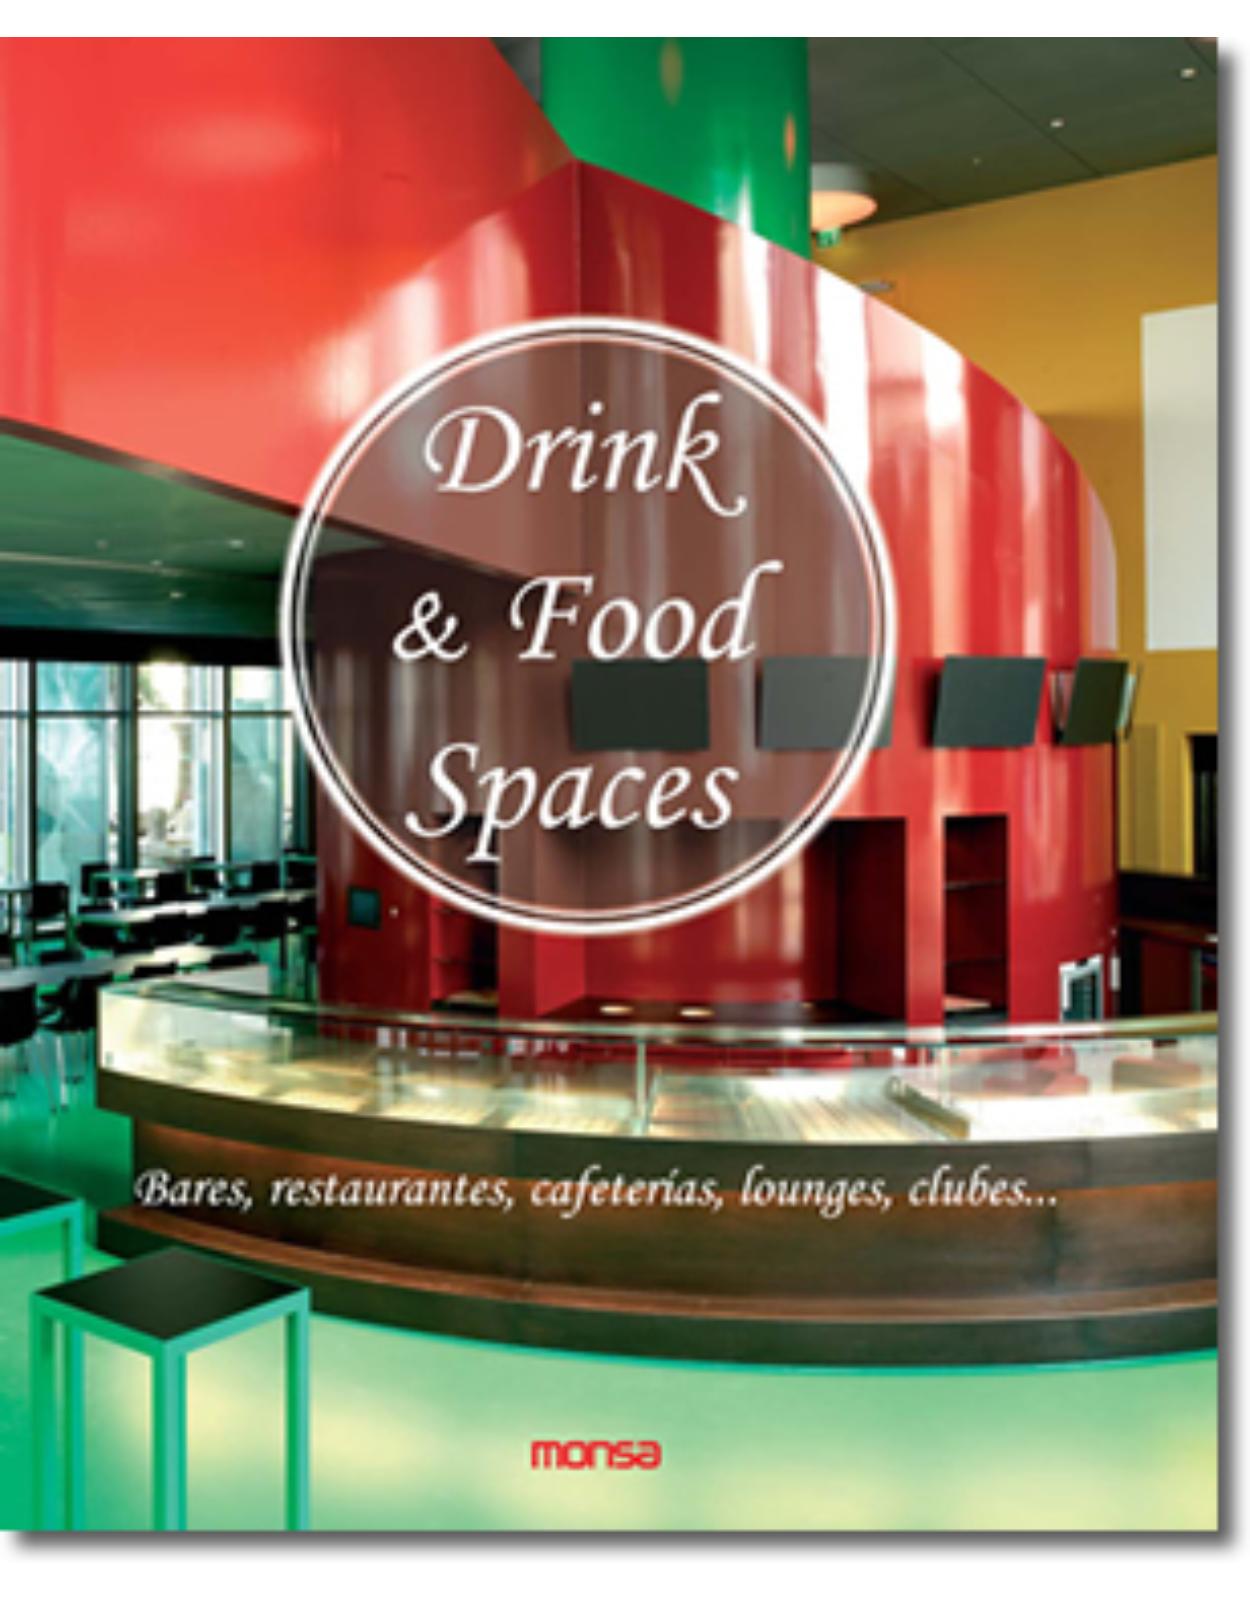 Drink & Food Spaces